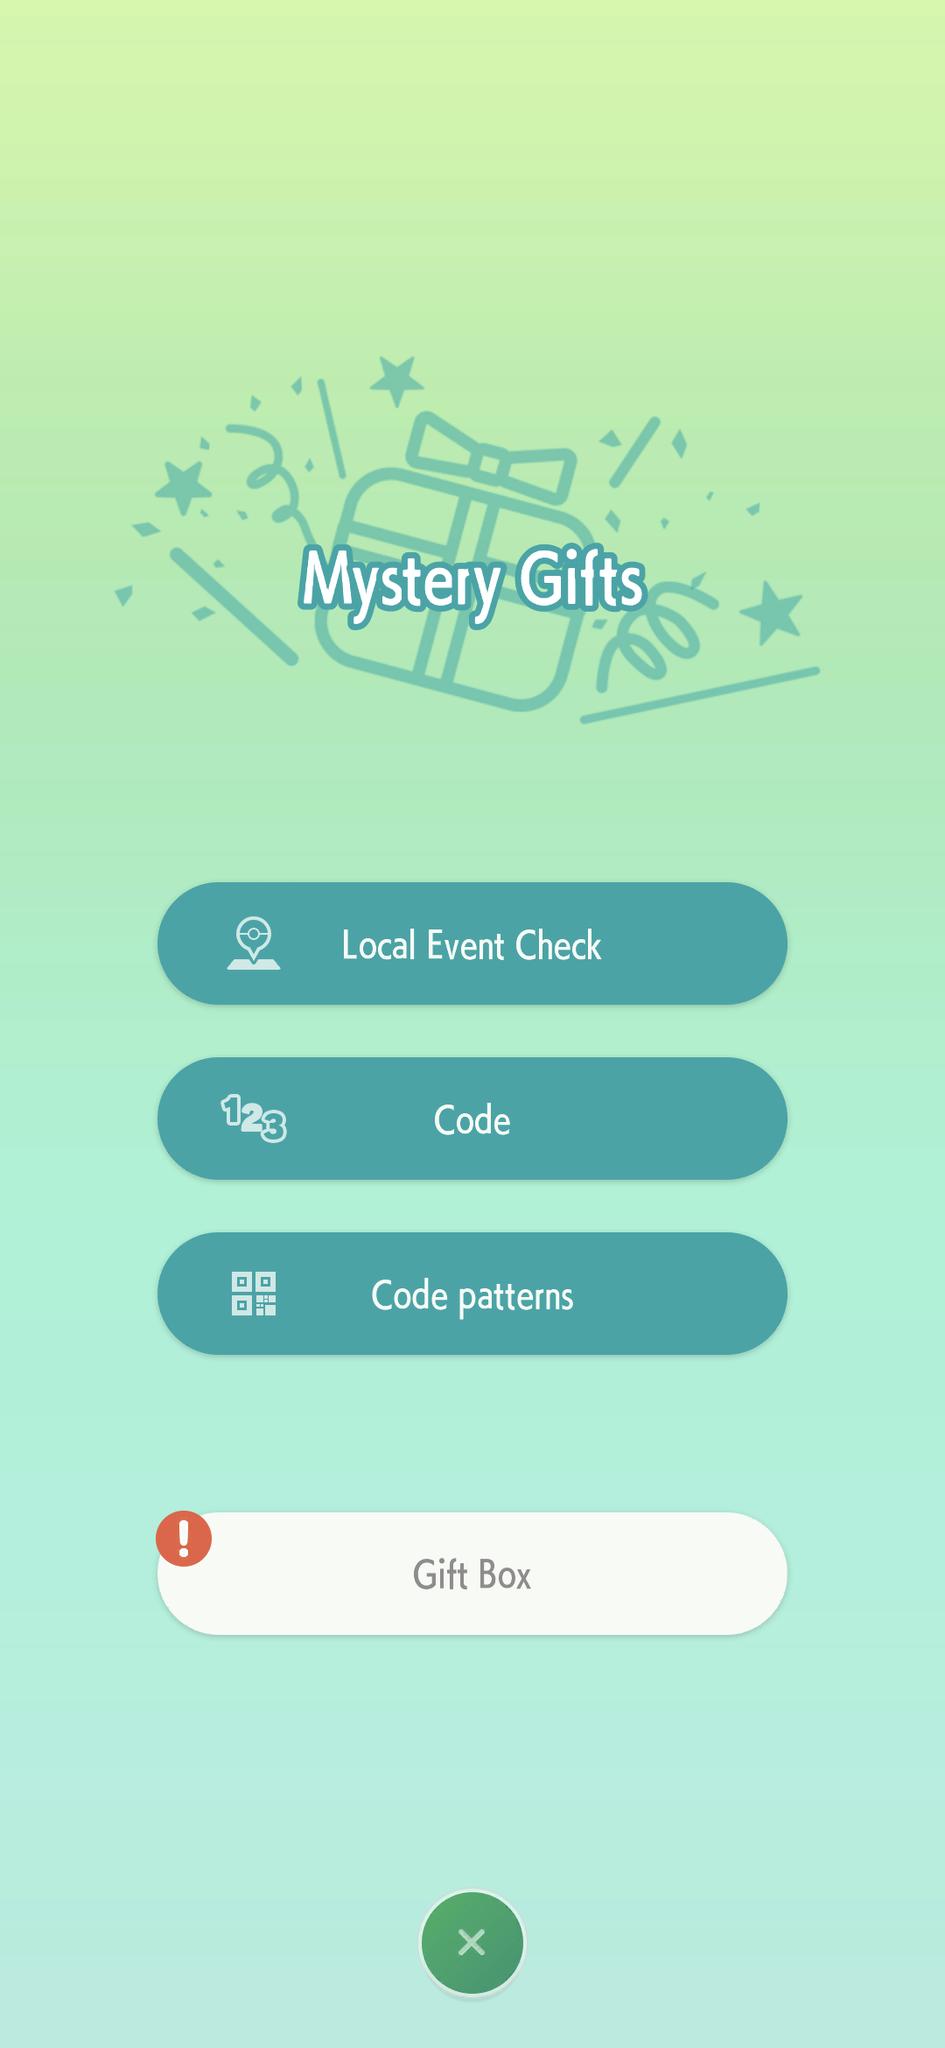 Select Gift Box